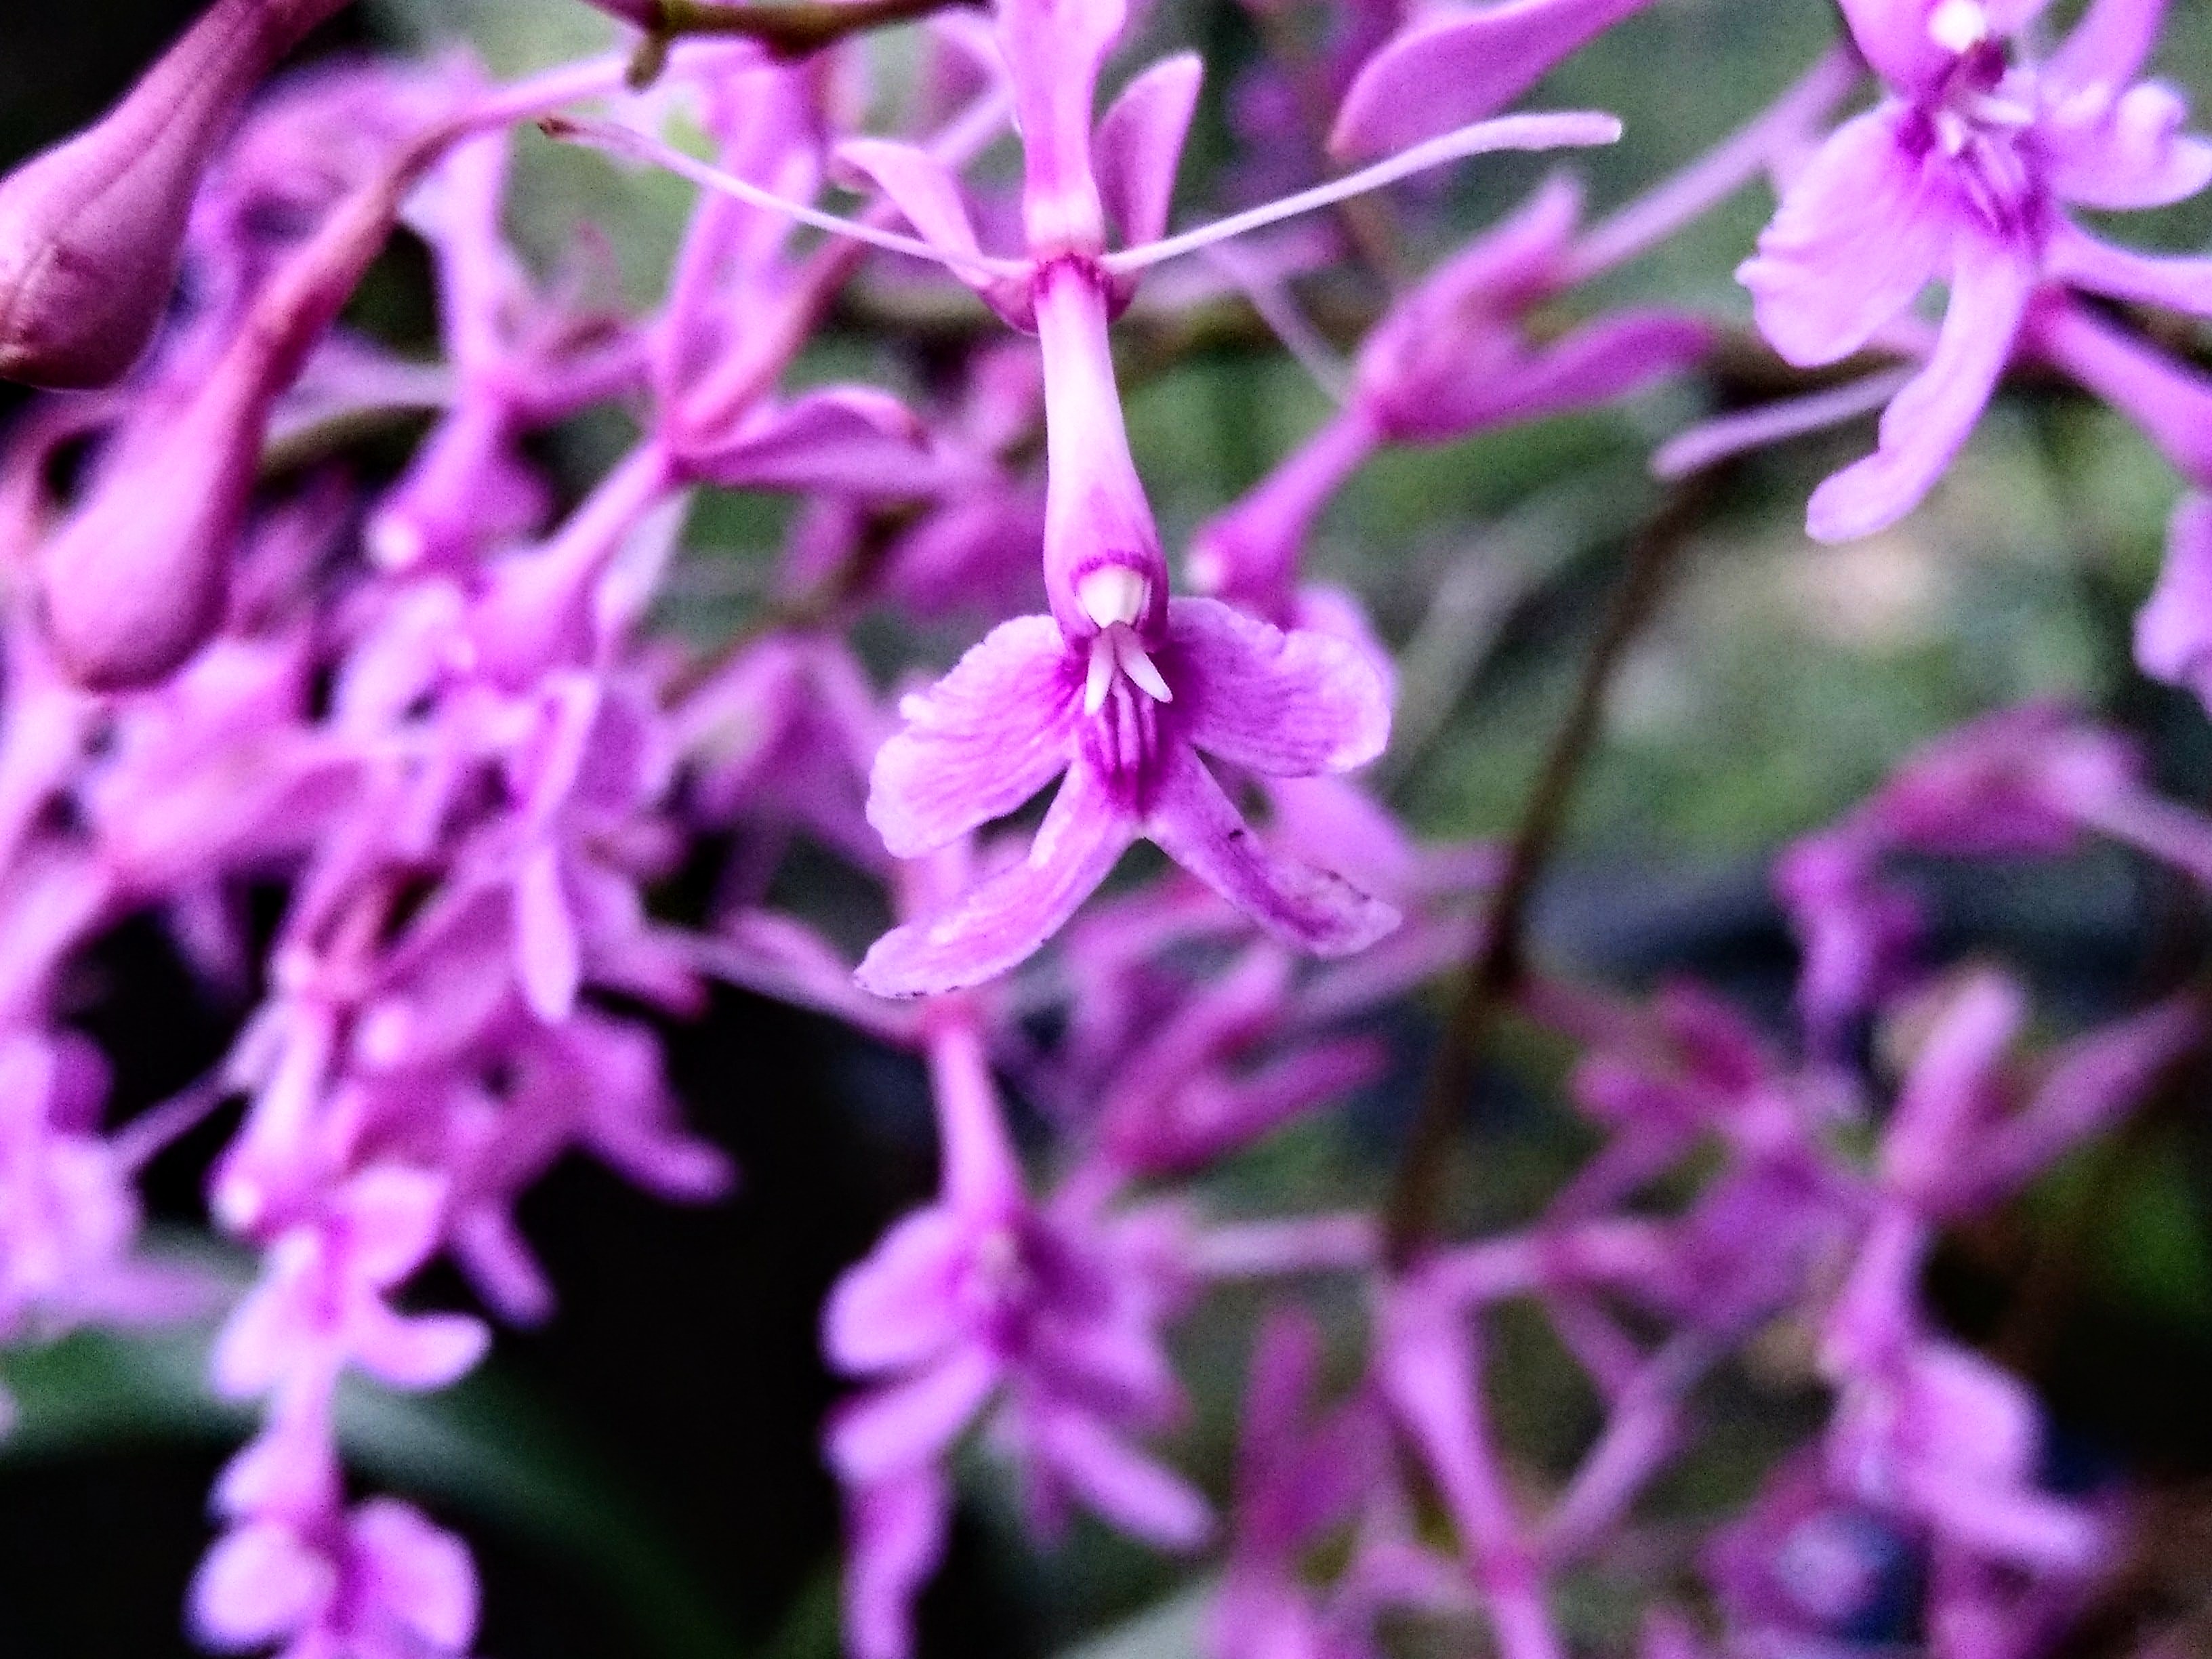 Epidendrum secundum